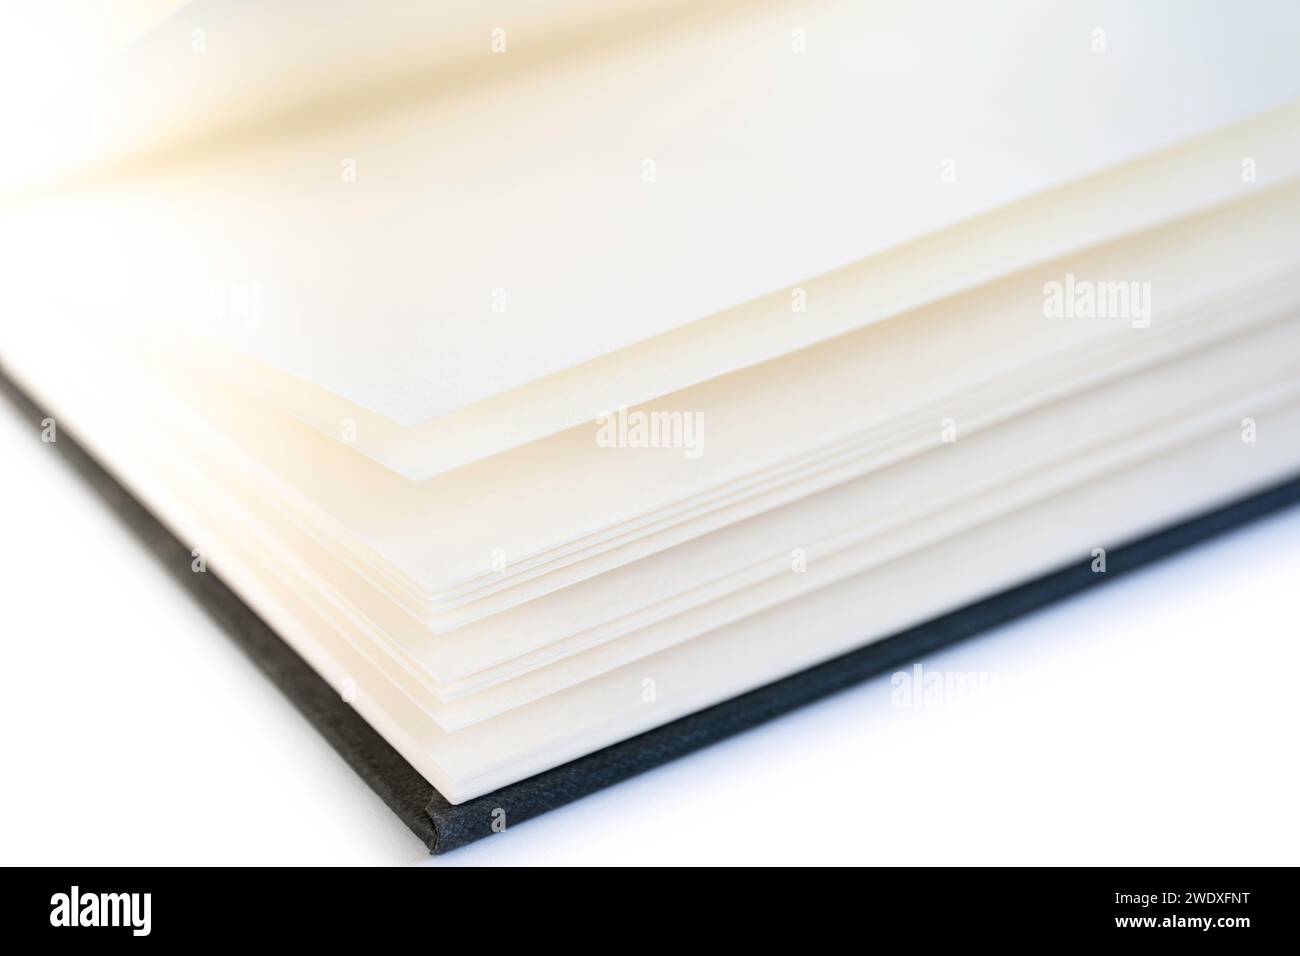 Libro aperto con pagine aperte bianche e una copertina in lino nero, isolata su sfondo bianco Foto Stock